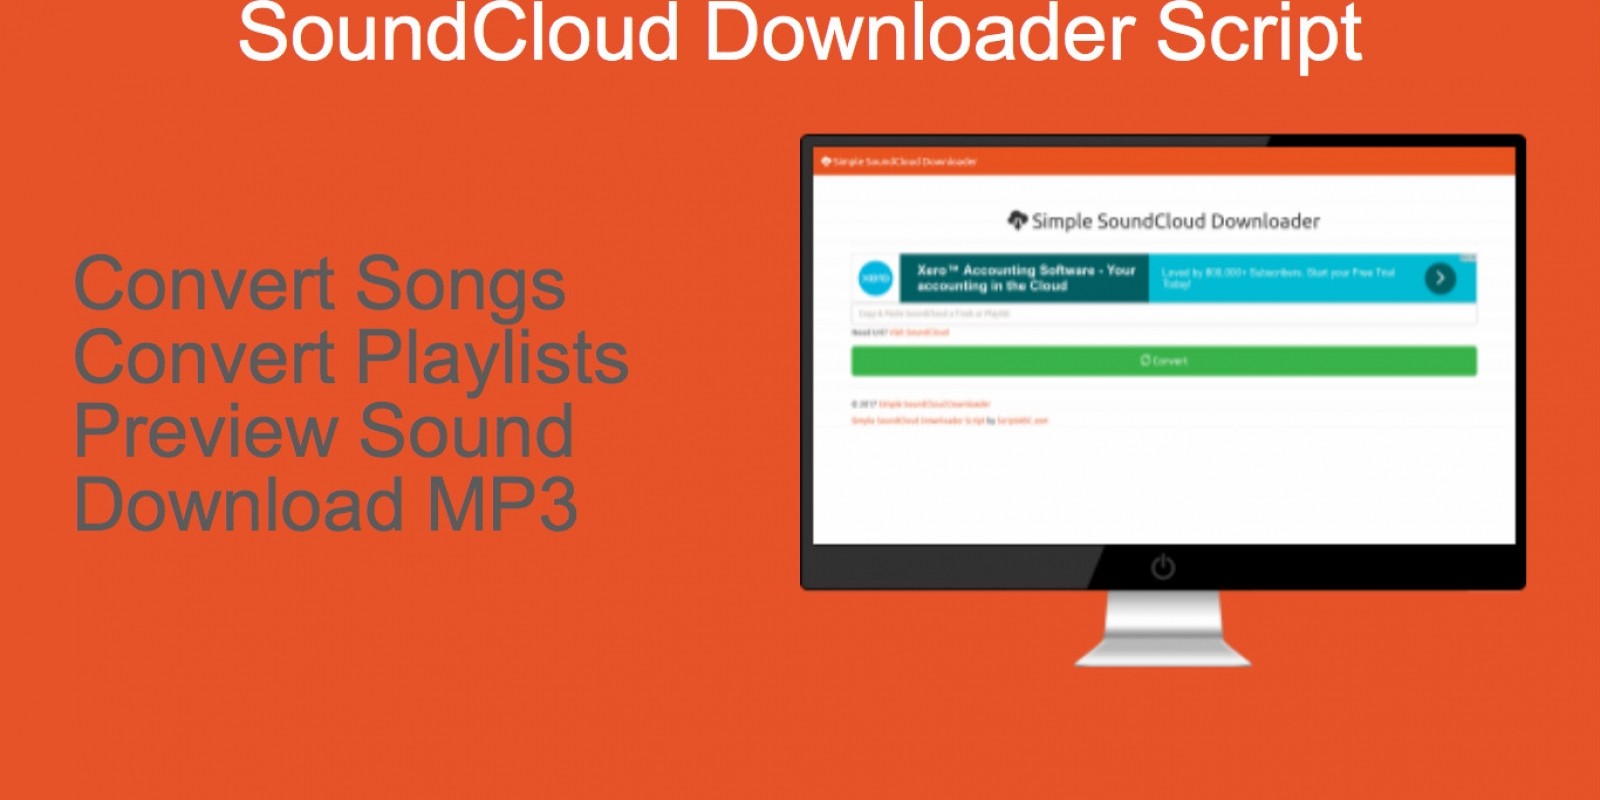 soundcloud downloader mp3 converter